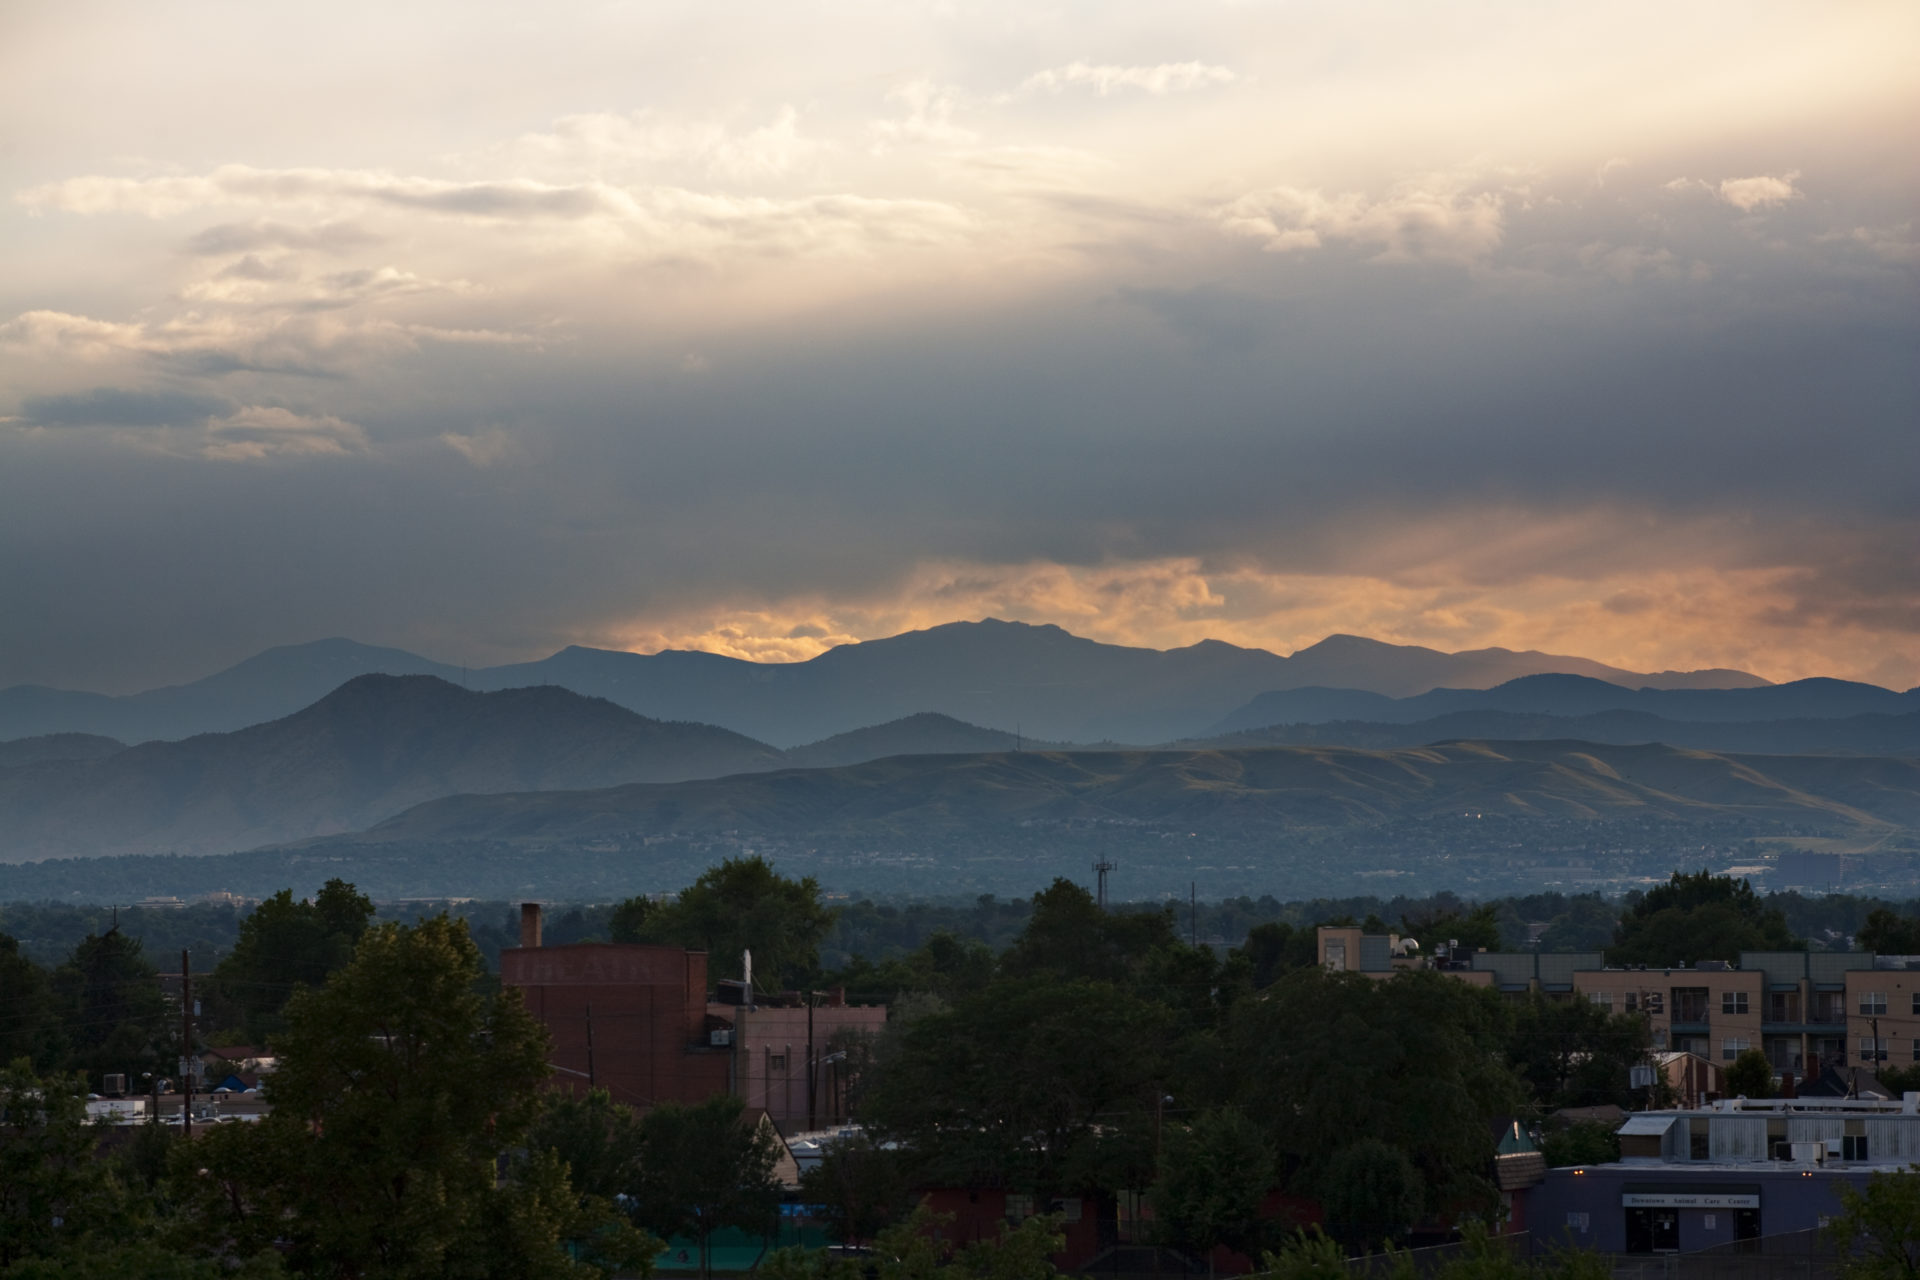 Mount Evans sunset - July 28, 2011